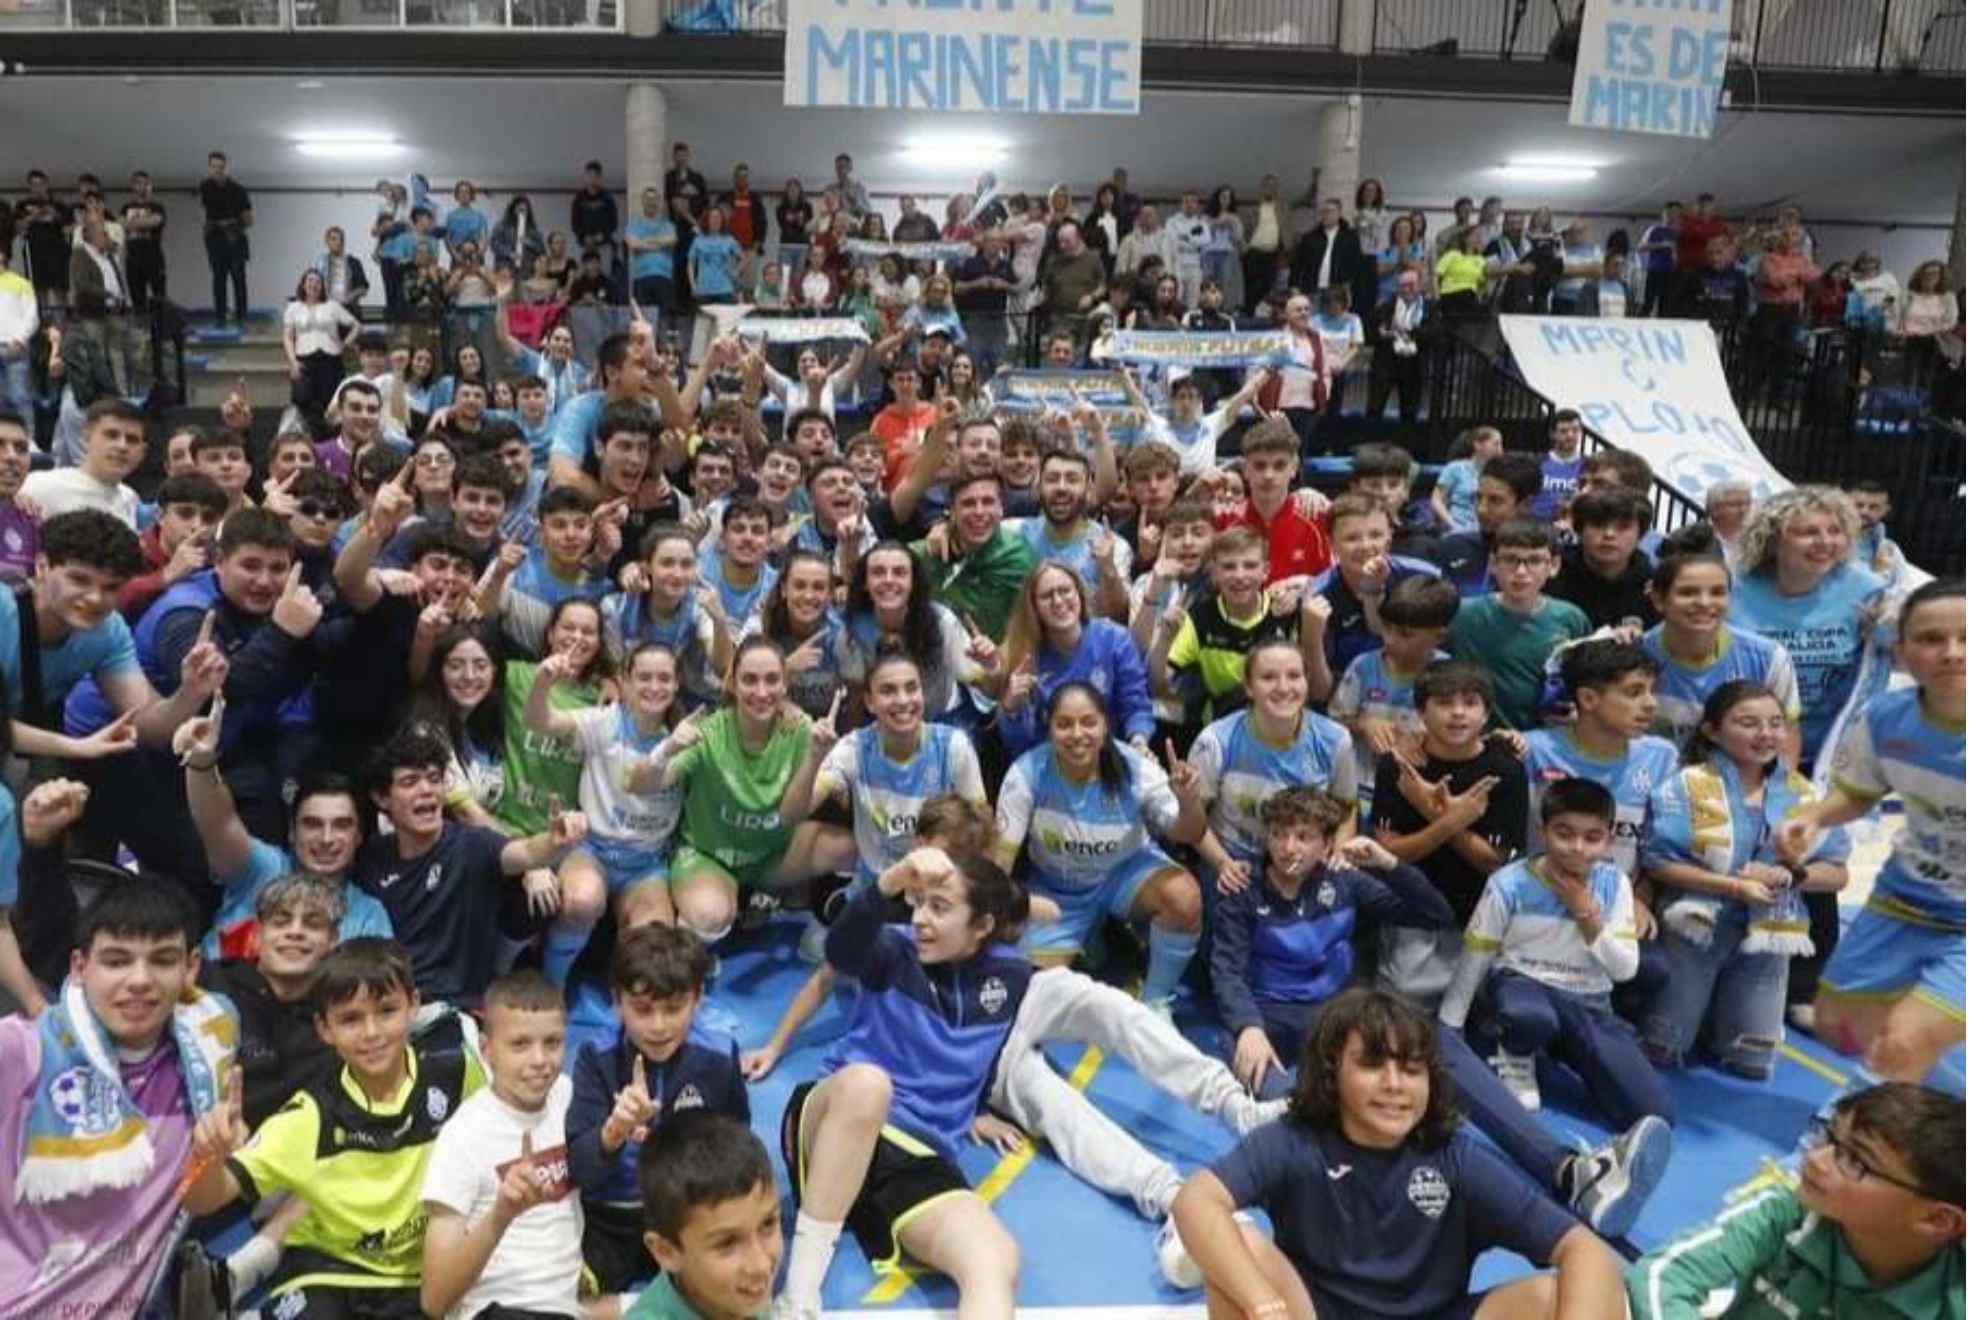 Imagen de una celebraci�n del ENCE Mar�n Futsal con el Frente Marinense